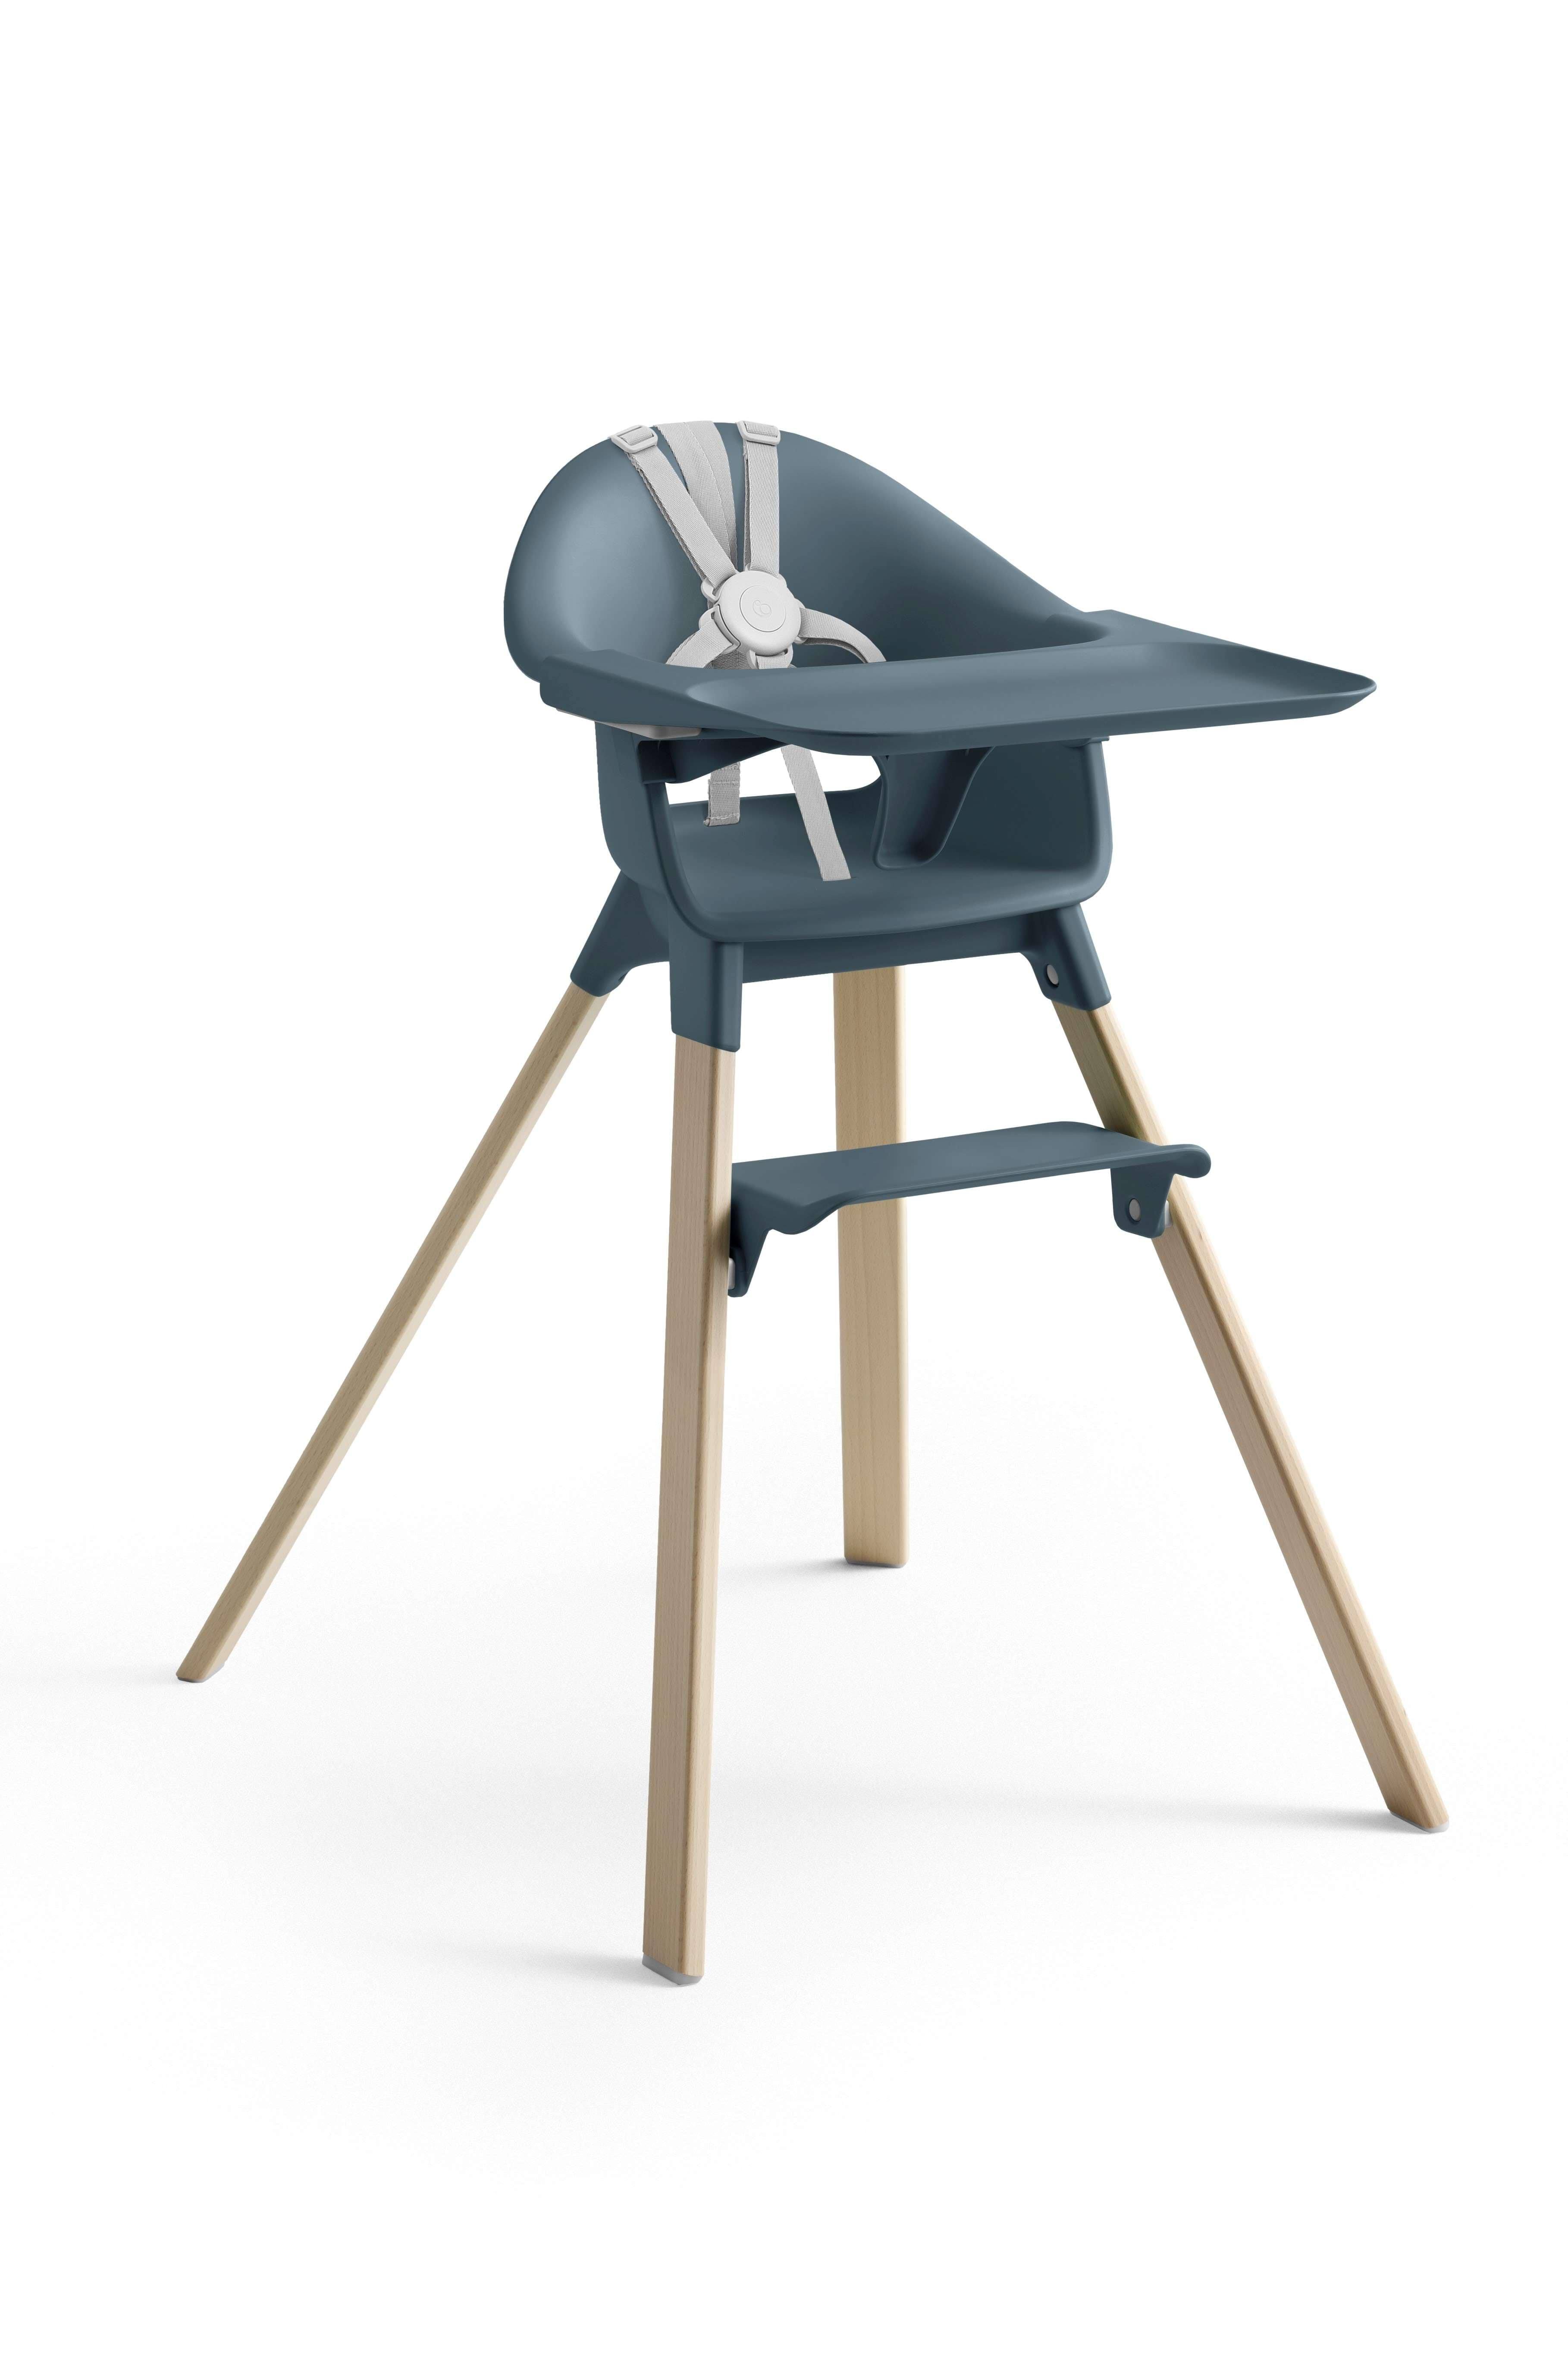 Stokke - Clikk High Chair, Fjord Blue